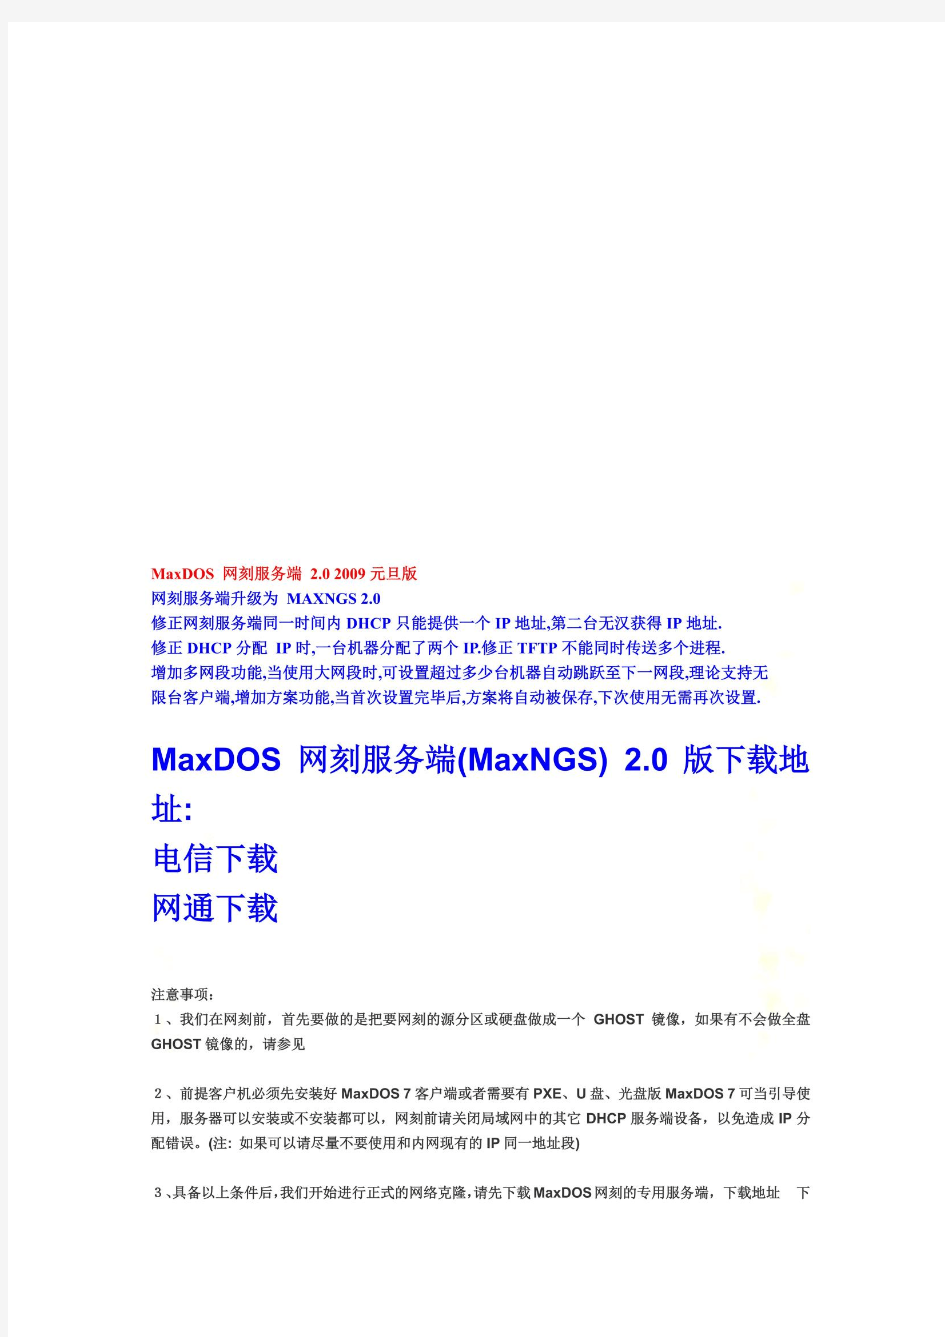 MaxDOS7网刻服务端简介(doc 19页)